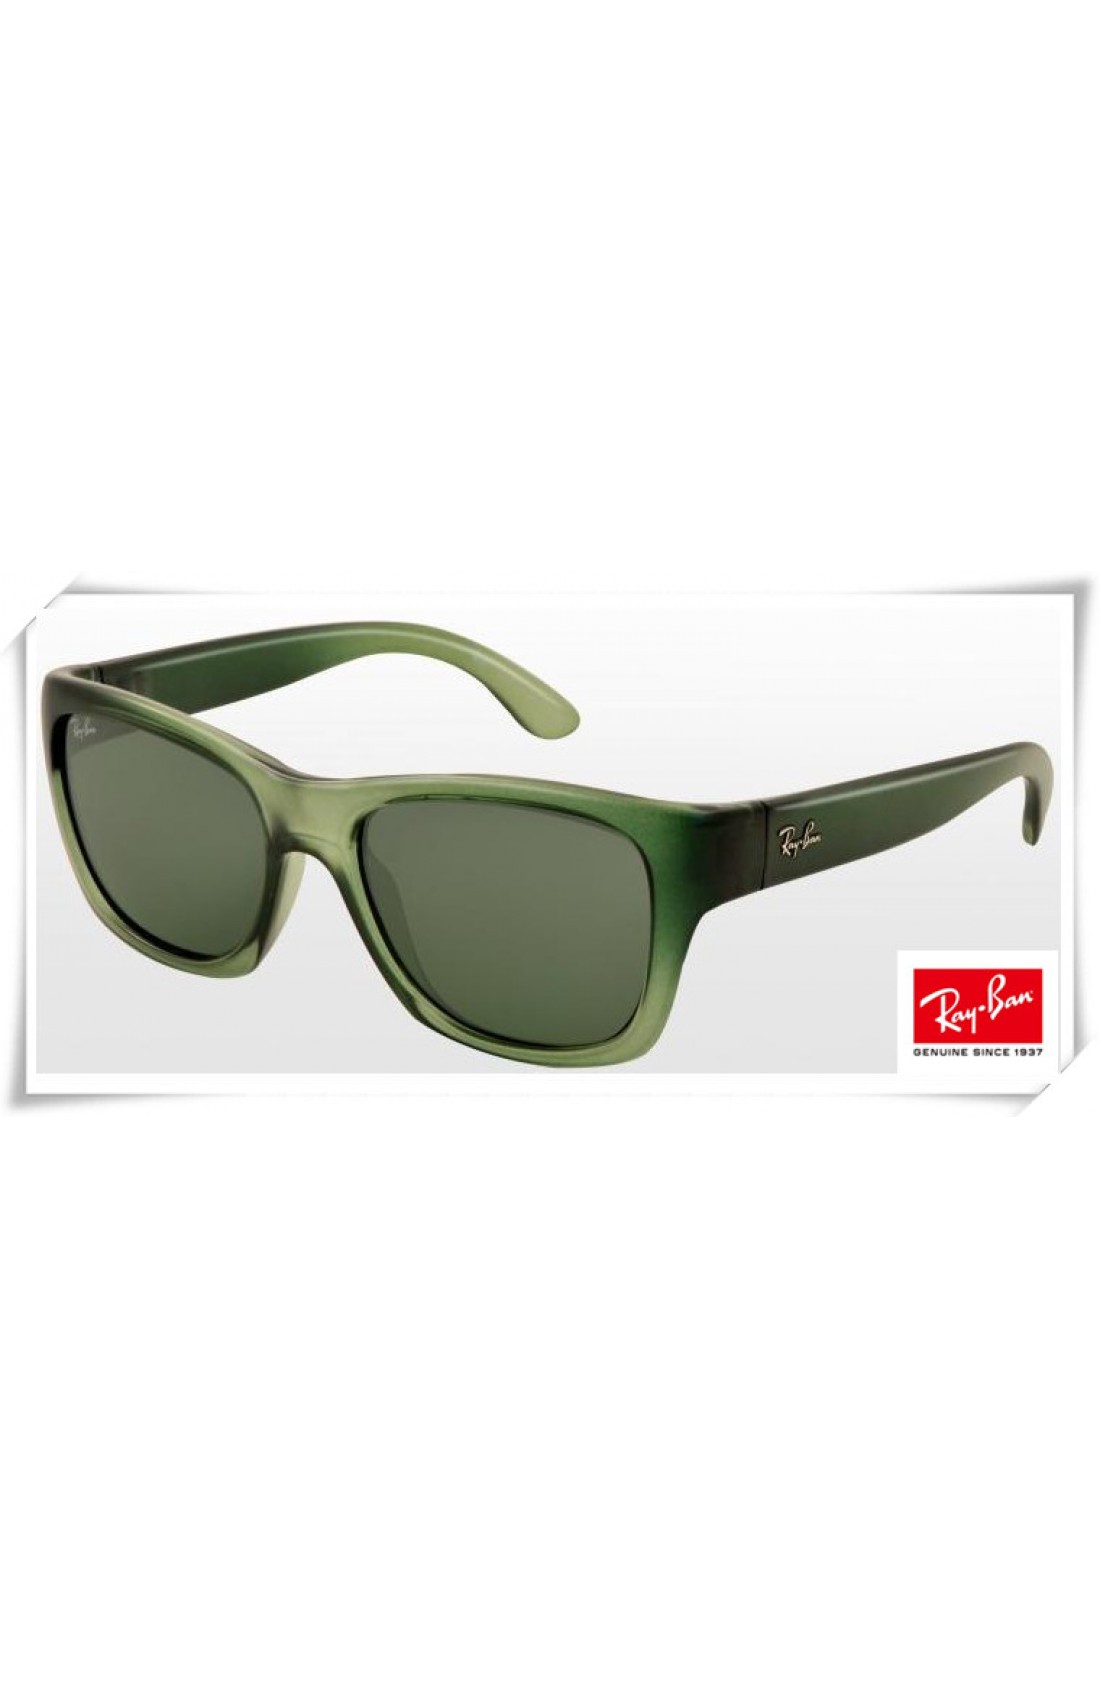 green wayfarer sunglasses